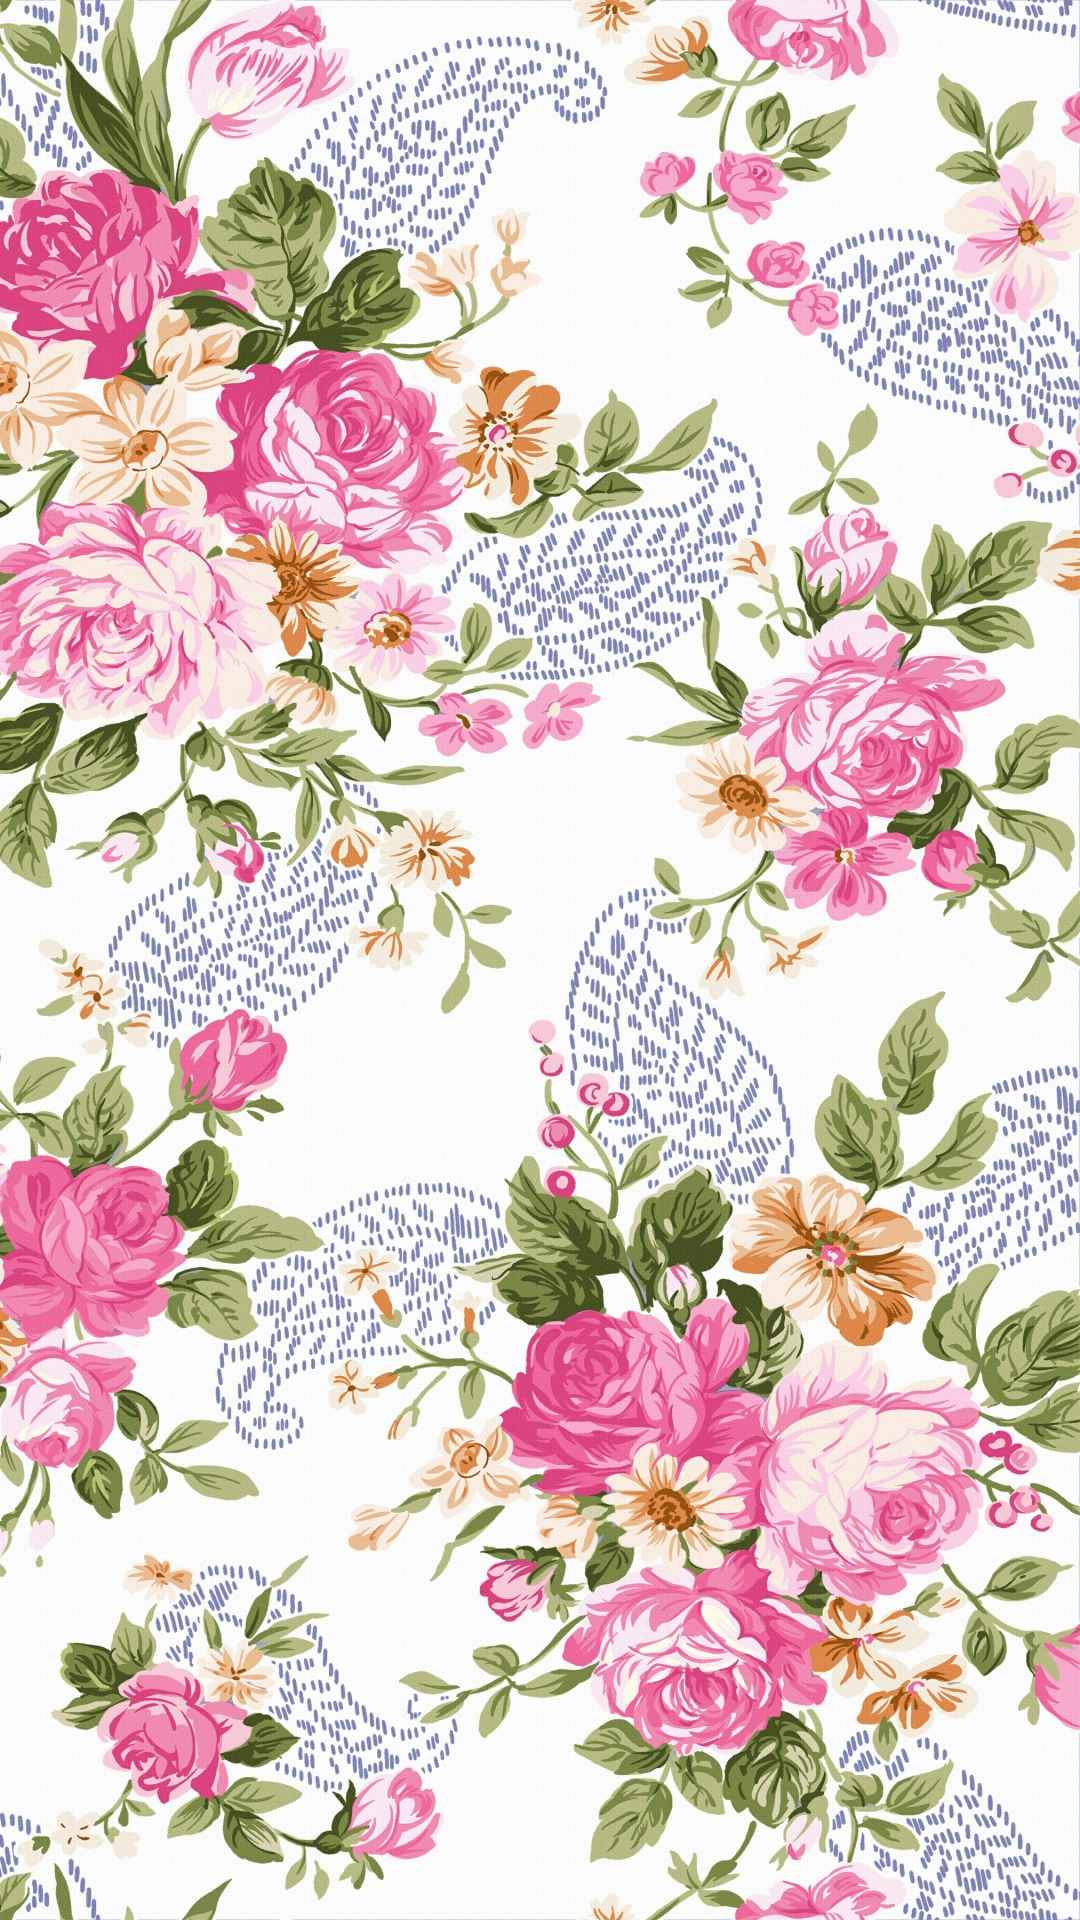 Flower pattern background